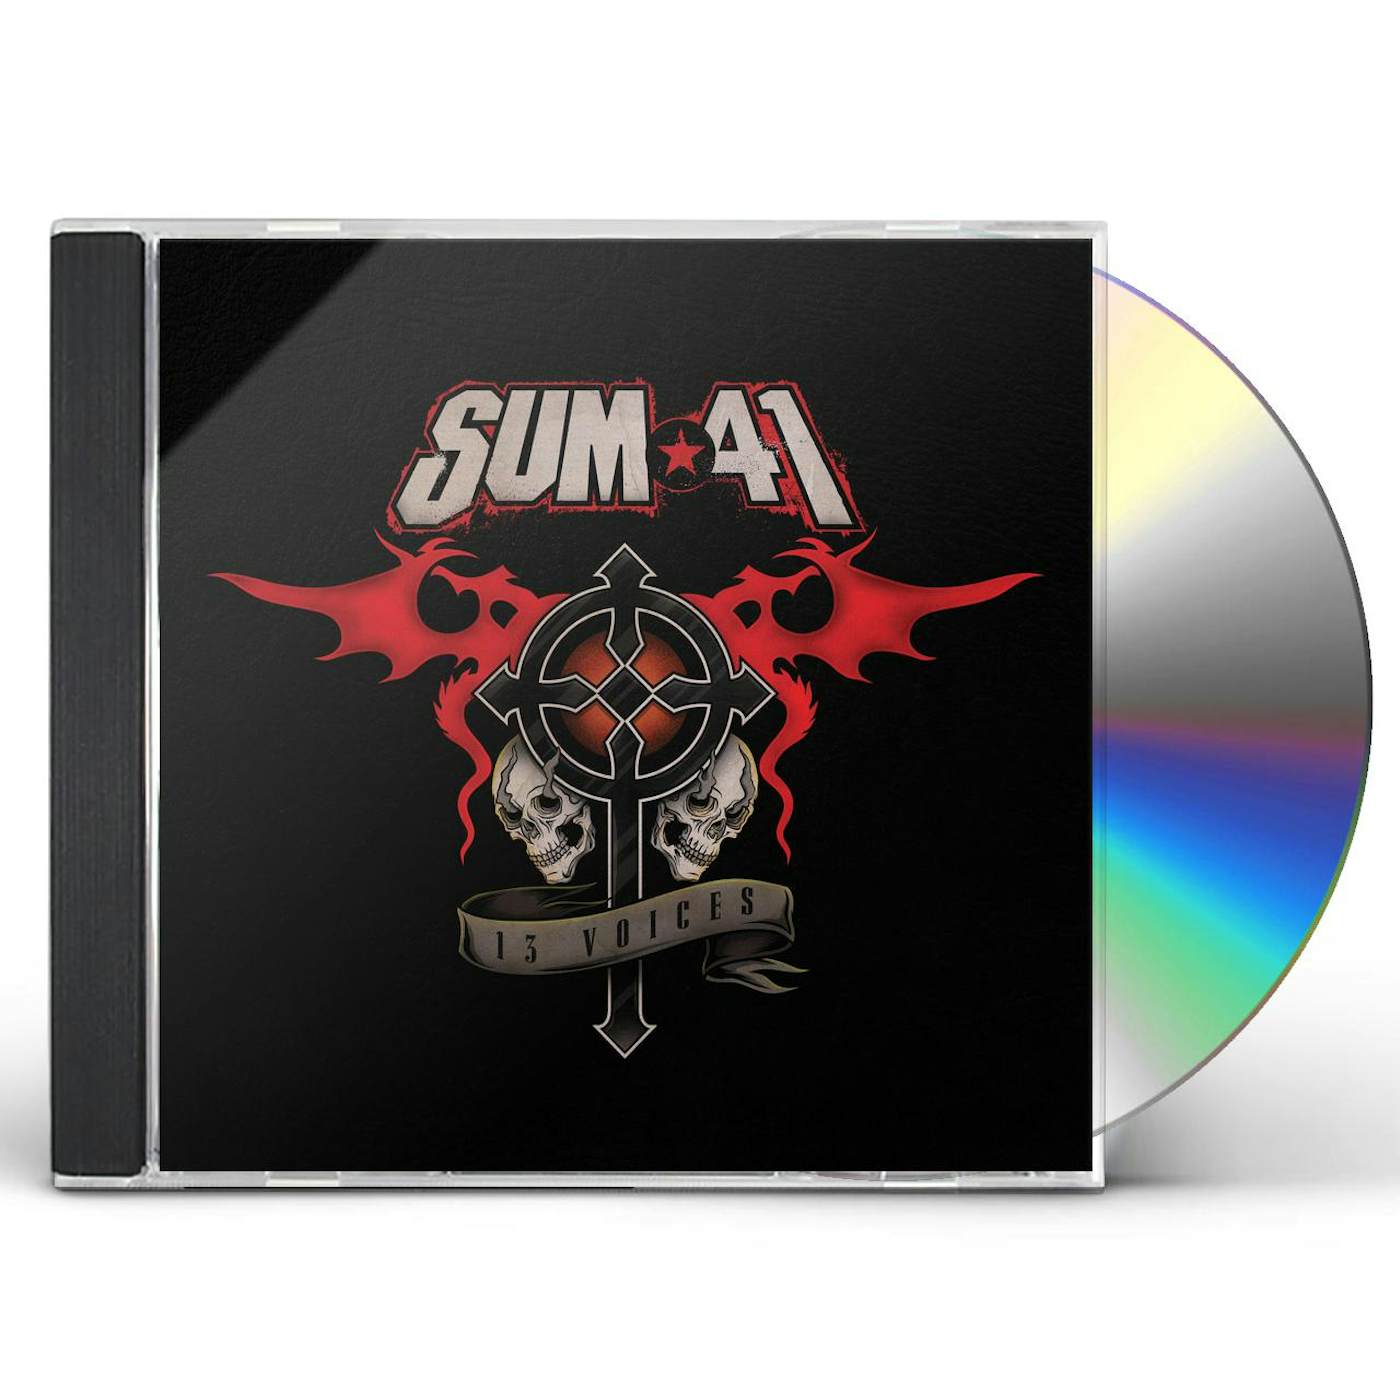 Sum 41 13 VOICES CD